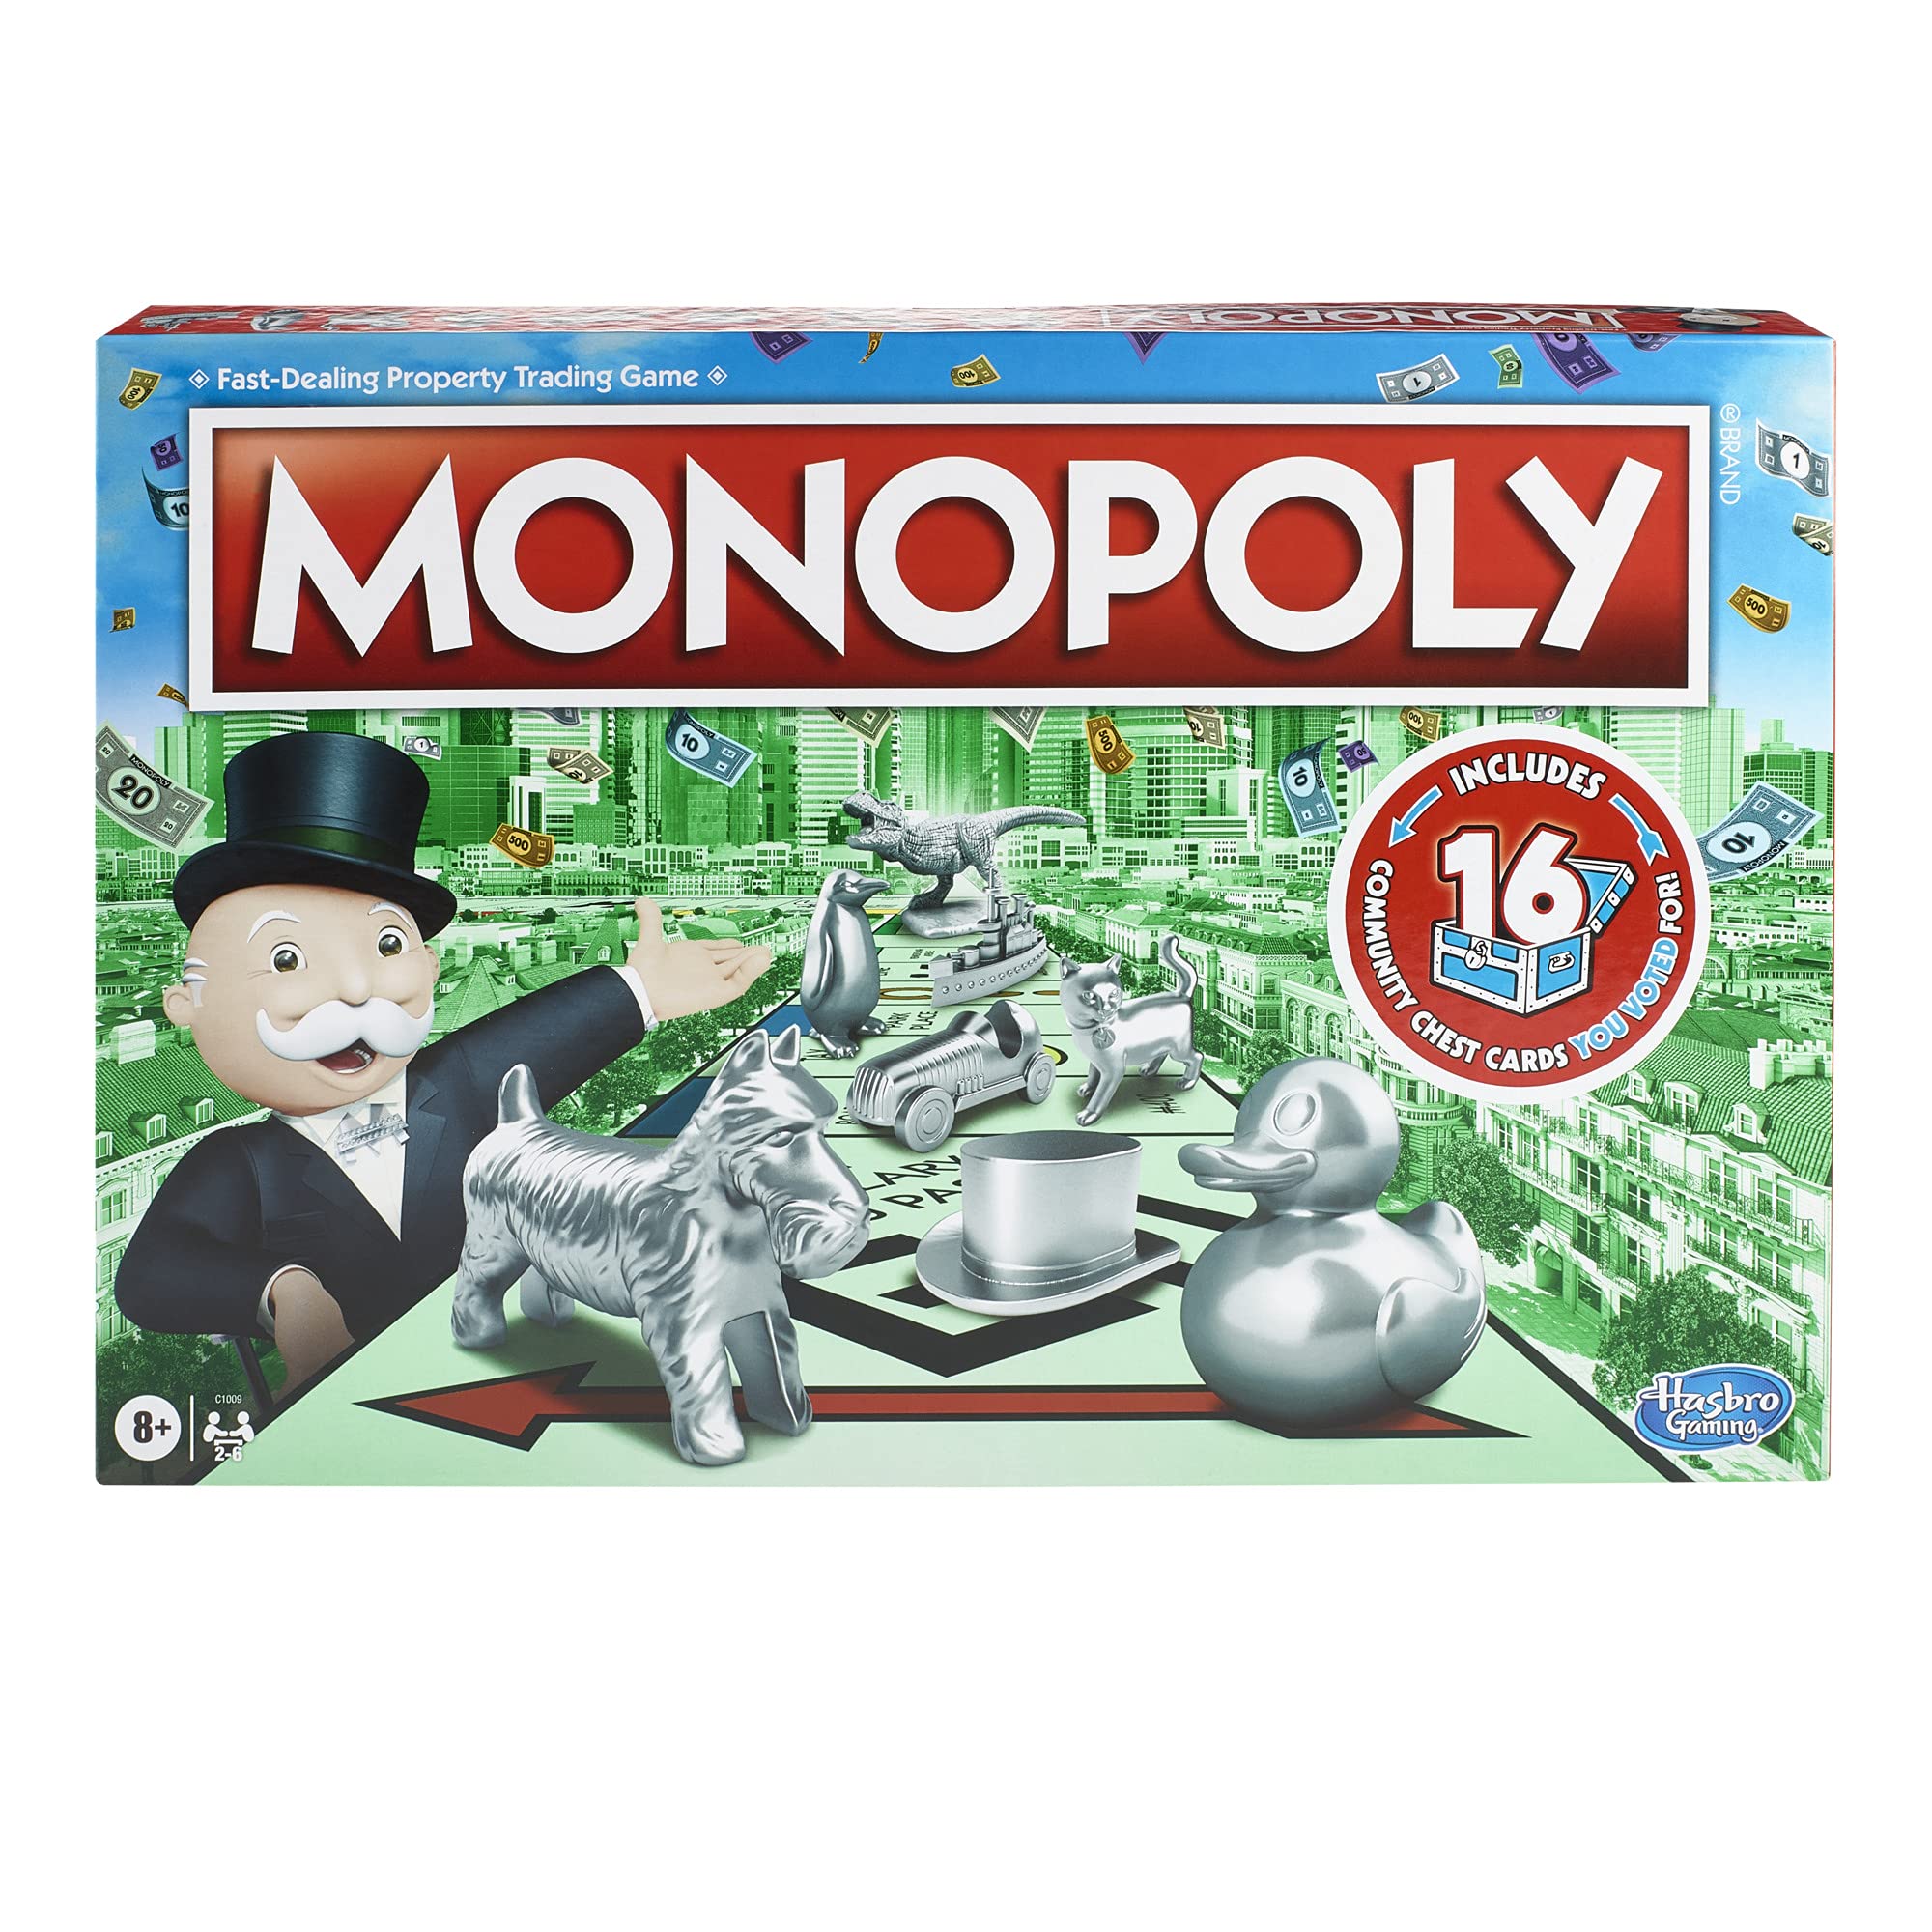 MONOPOLY Spiel, Familien-Brettspiel für 2 bis 6 Spieler, Brettspiel für Kinder ab 8 Jahren, inklusive Fan-Abstimmung Community-Brustkarten